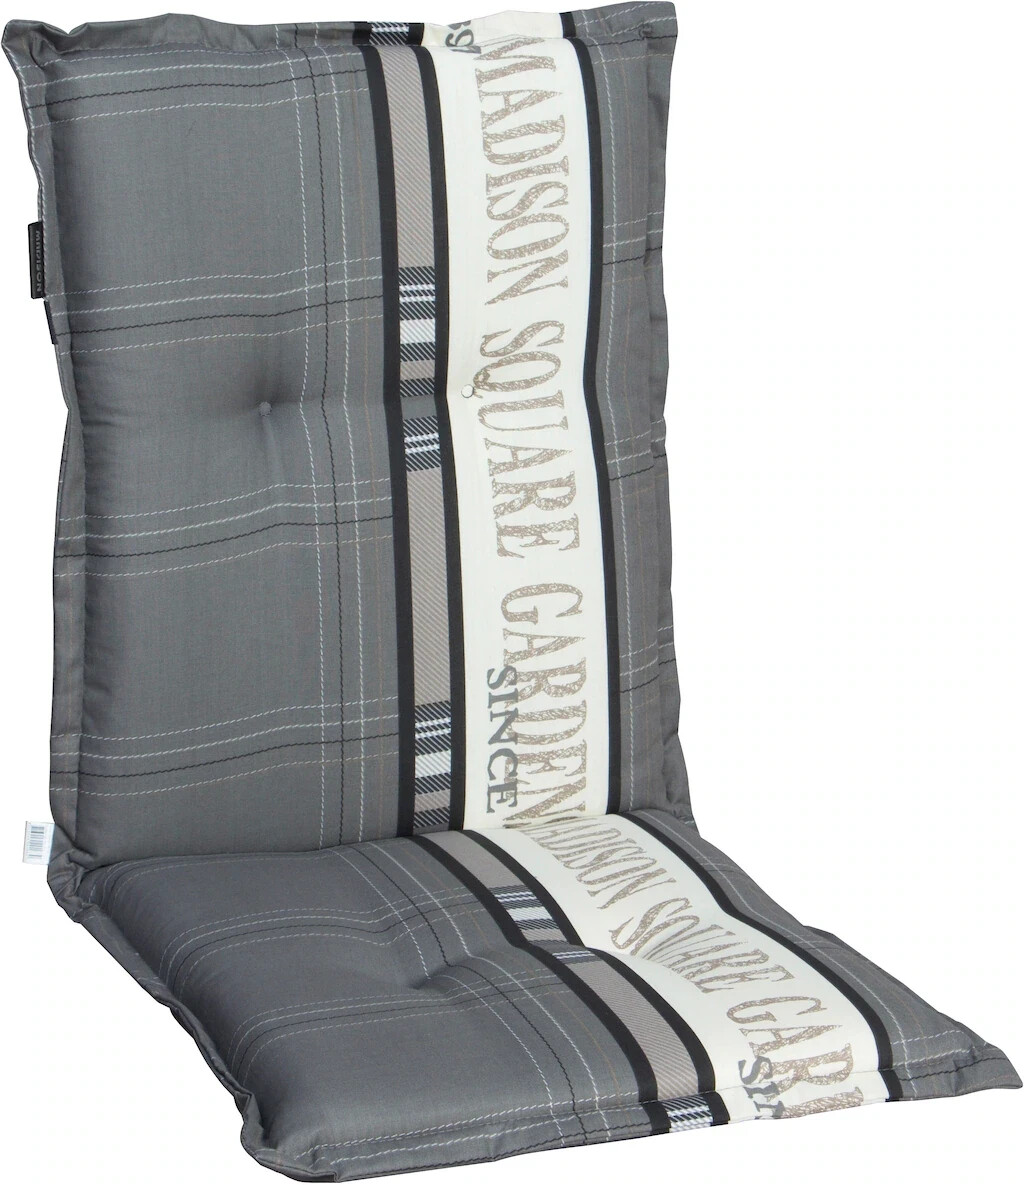 madison Textil-Sesselauflage niedrig 50 x 105 x 8 cm niedrig grau (M41007)  ab 79,00 € | Preisvergleich bei